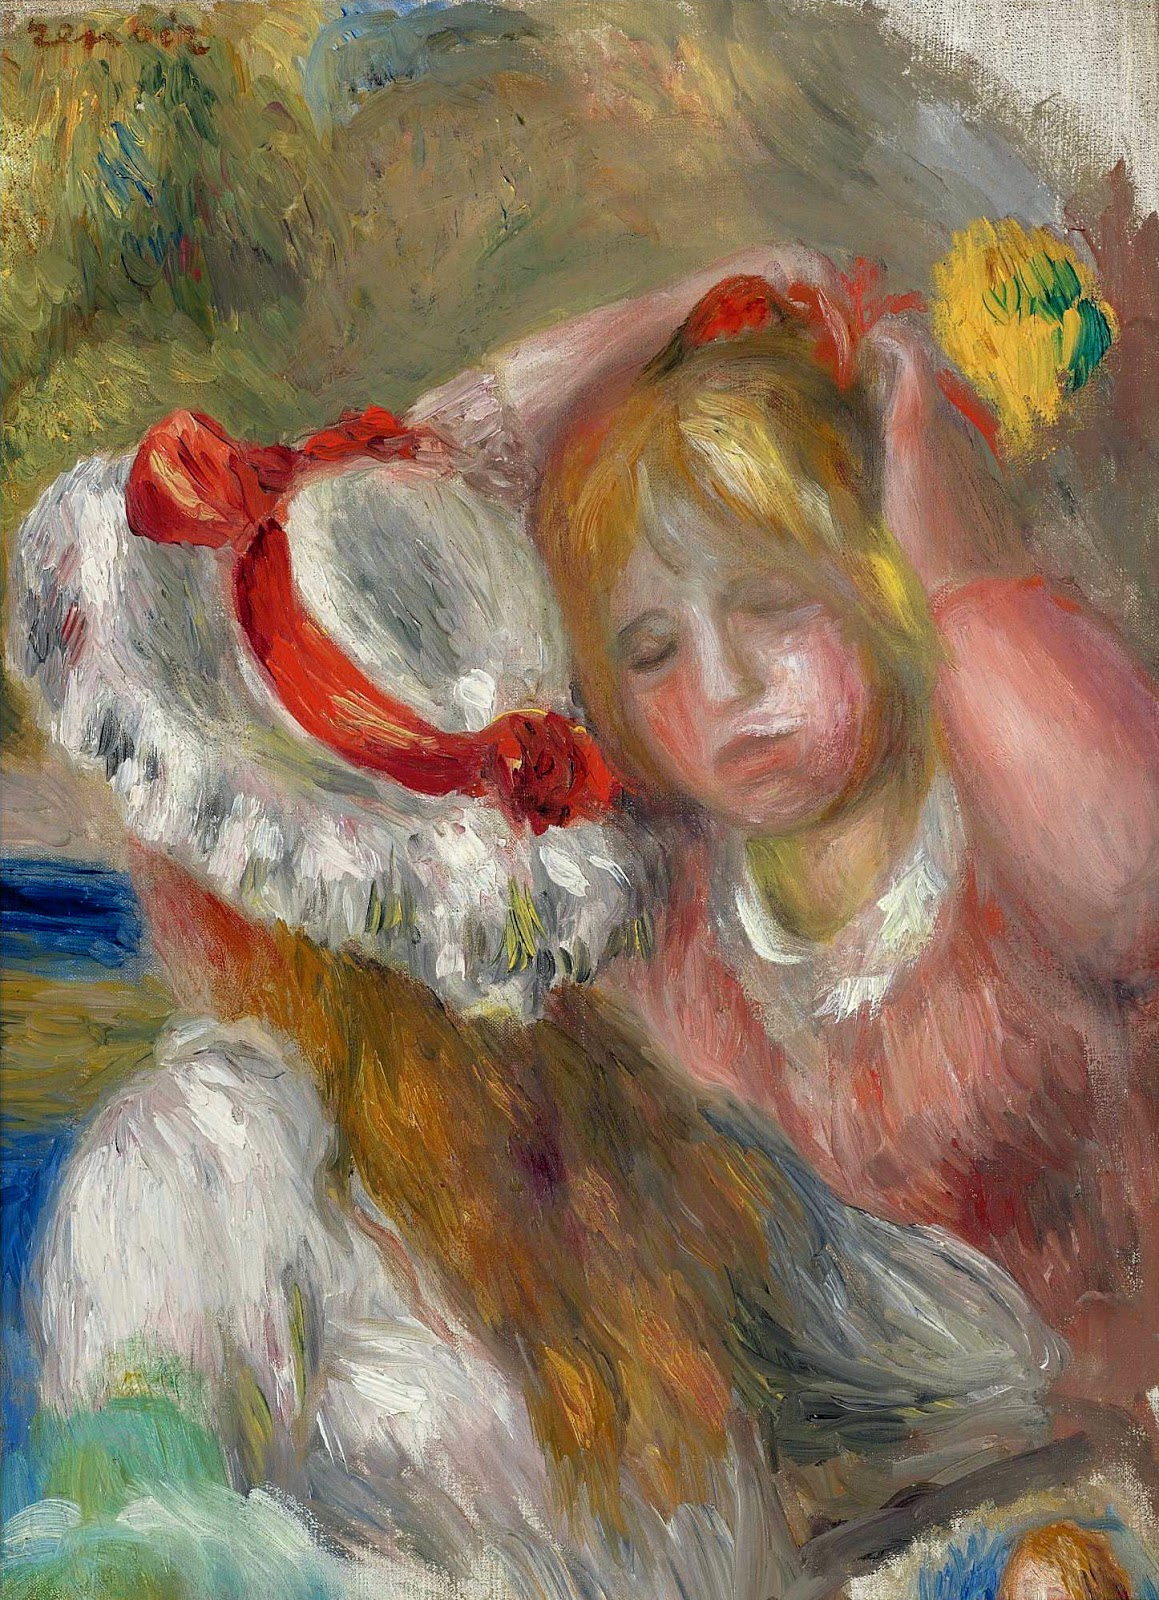 Pierre+Auguste+Renoir-1841-1-19 (815).jpg